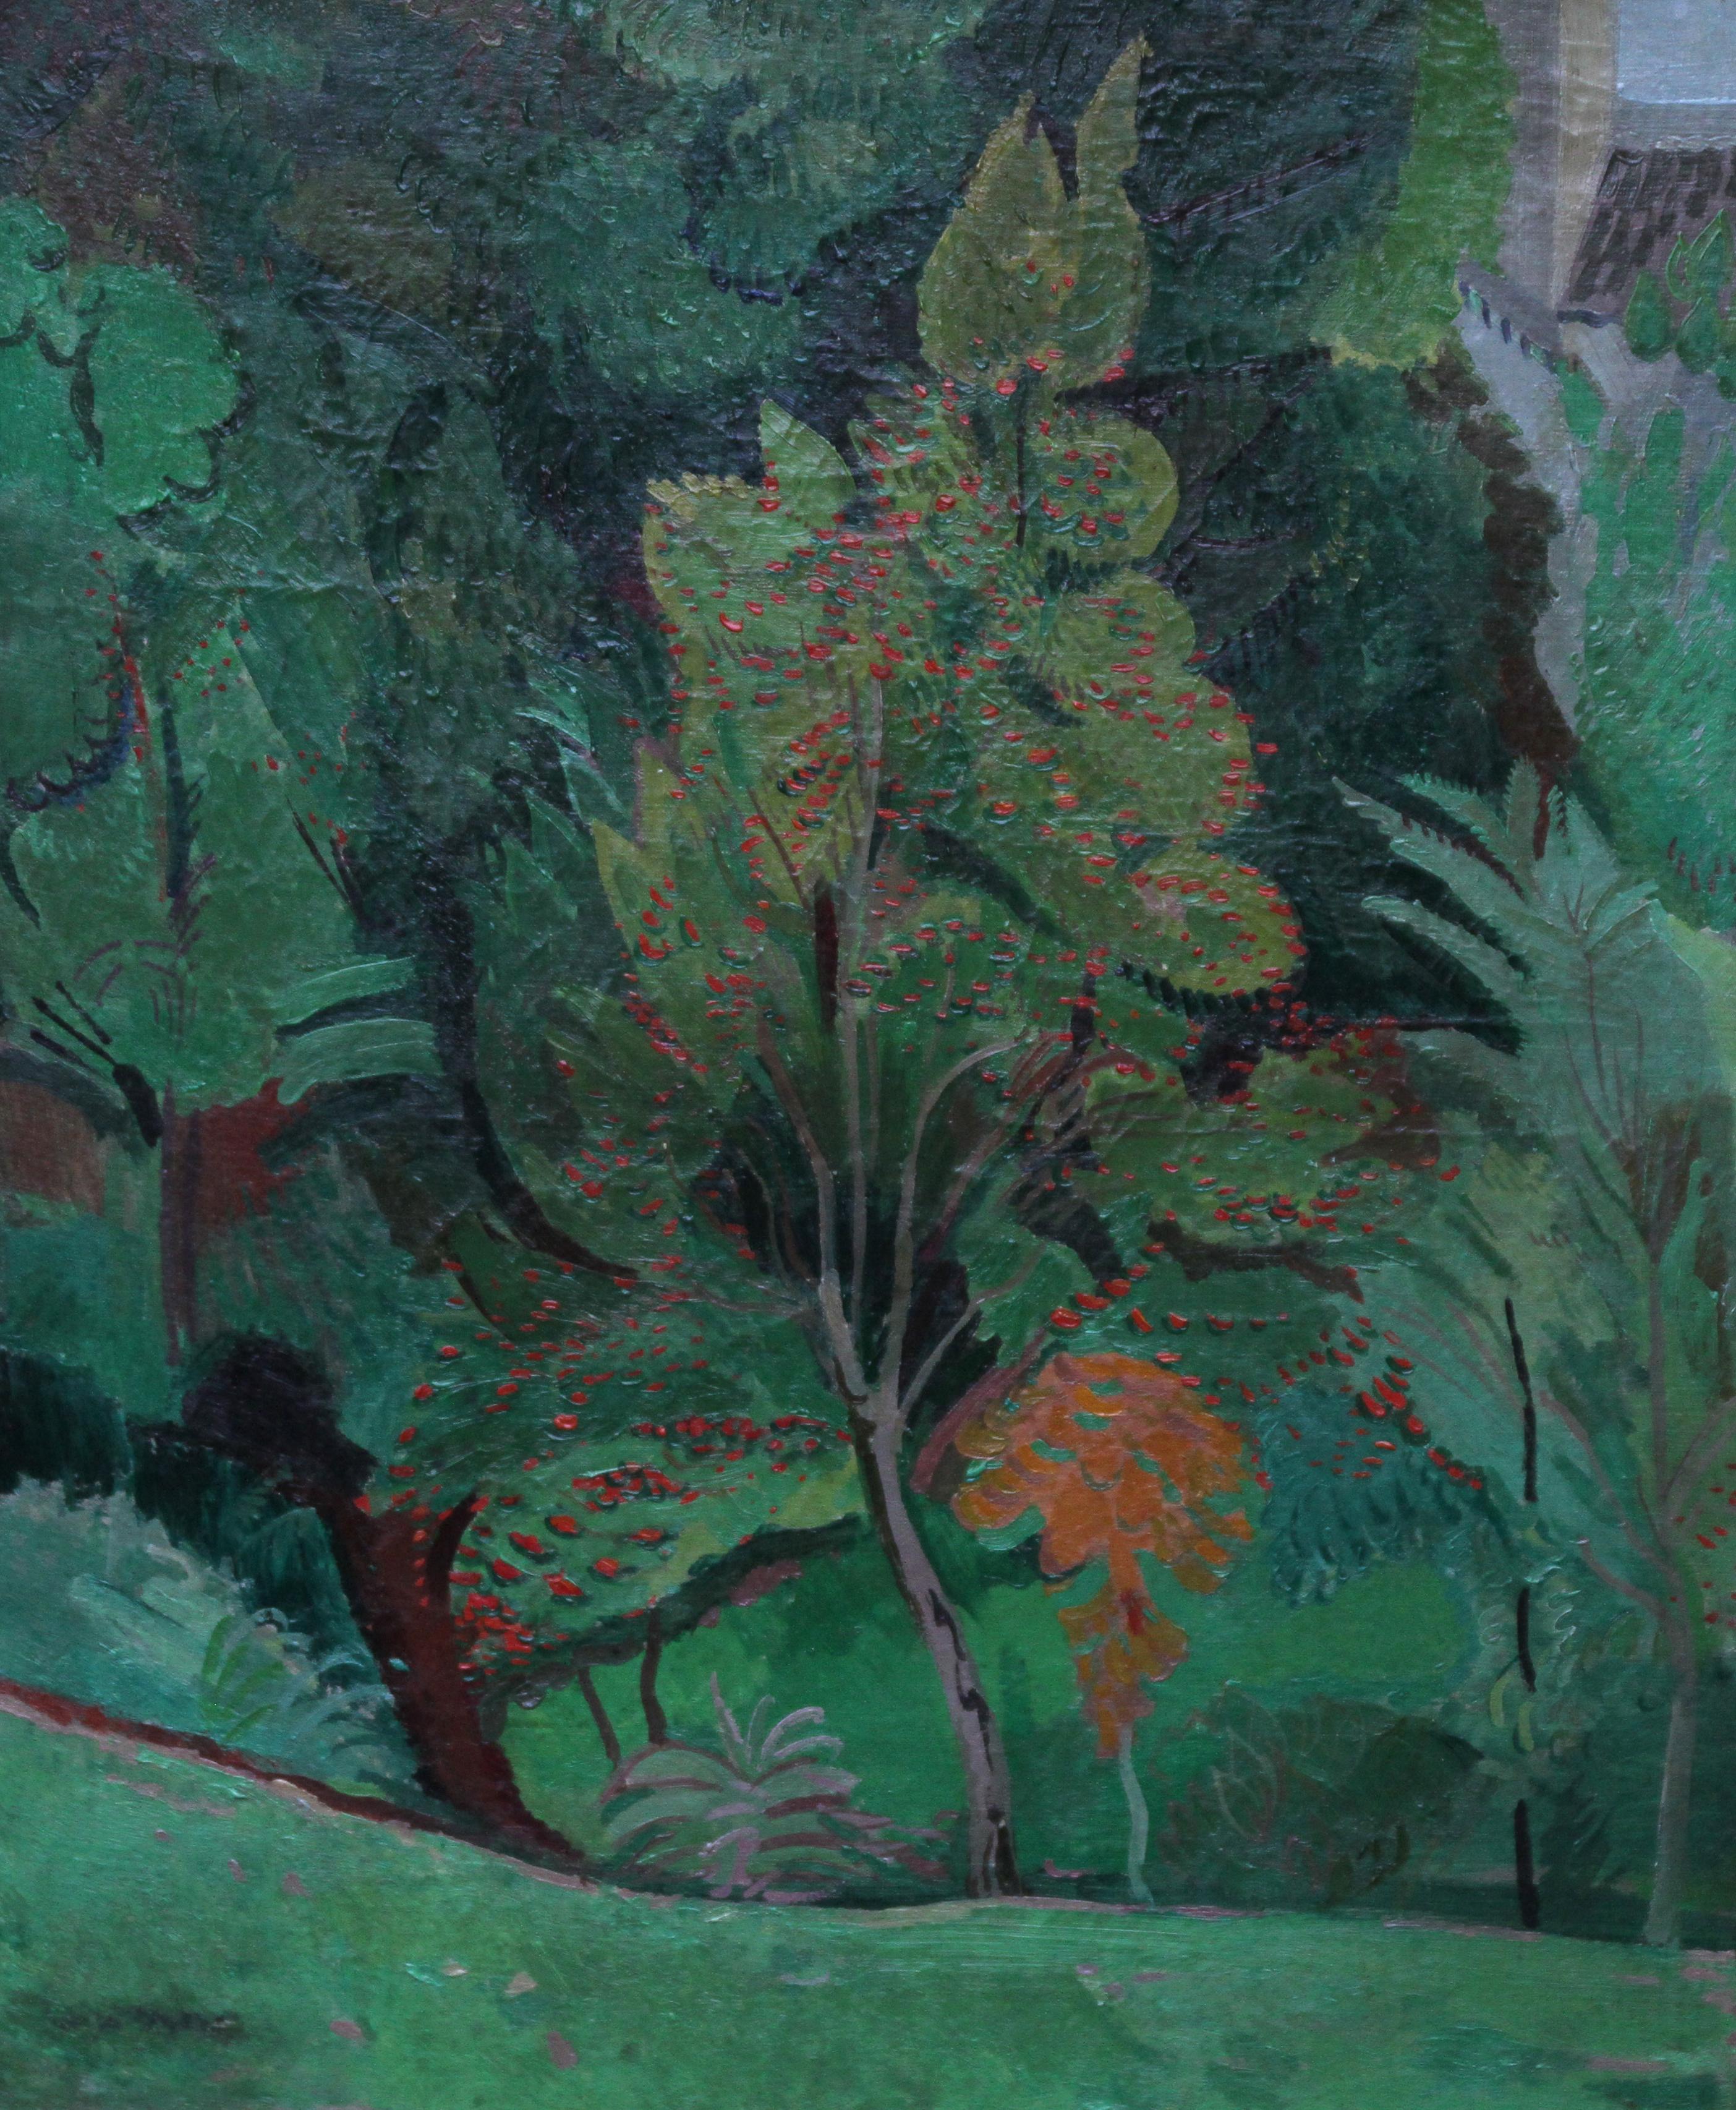 Trees – Postimpressionistisches Landschafts-Ölgemälde der 30er Jahre aus der britischen Moderne – Painting von Duncan Grant (circle)